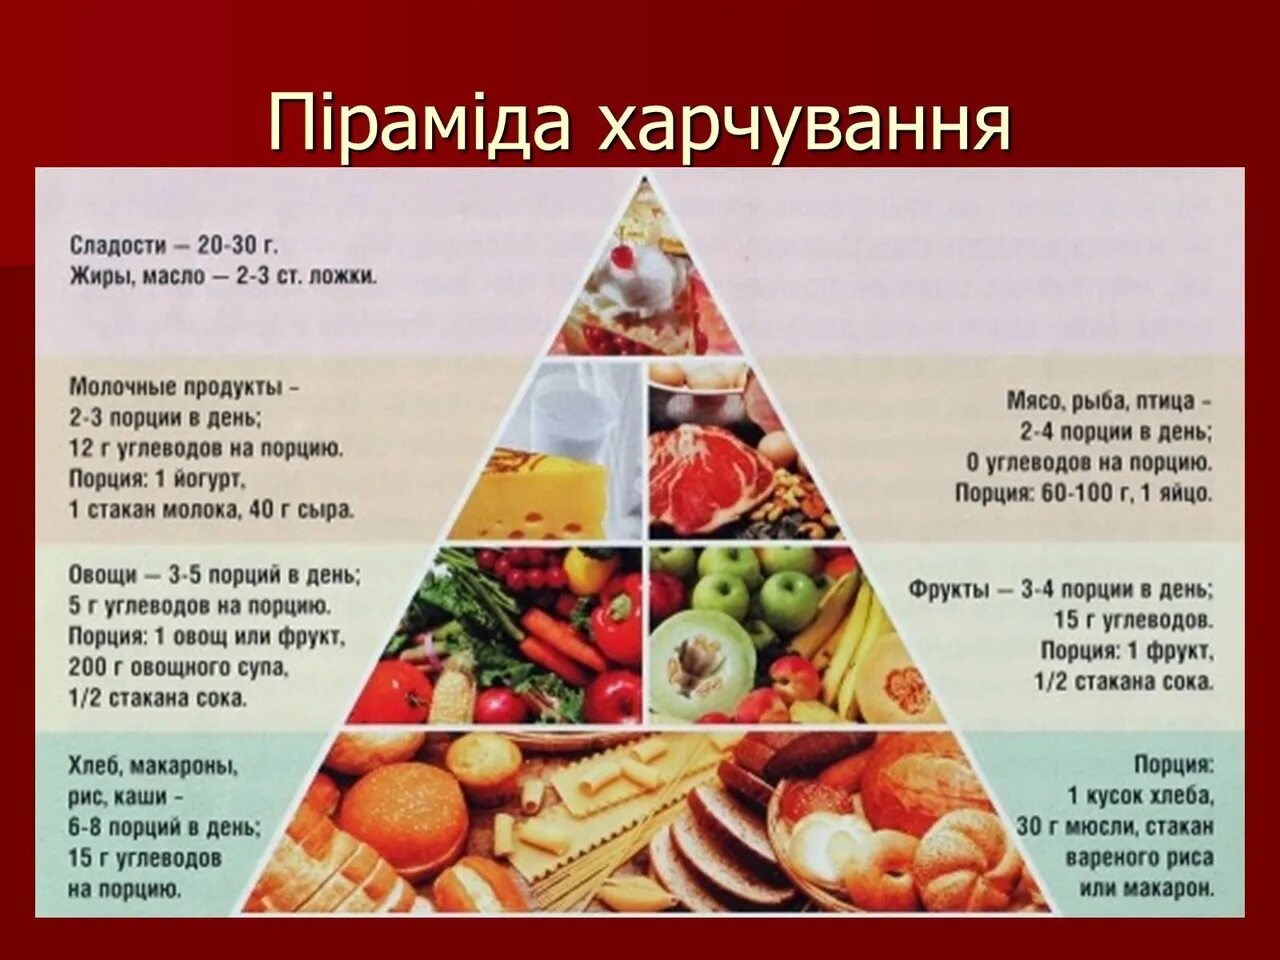 Пирамида рационального питания. Питание пирамида здорового питания. Пирамида рационого питания. Сбалансированное питание пирамида.